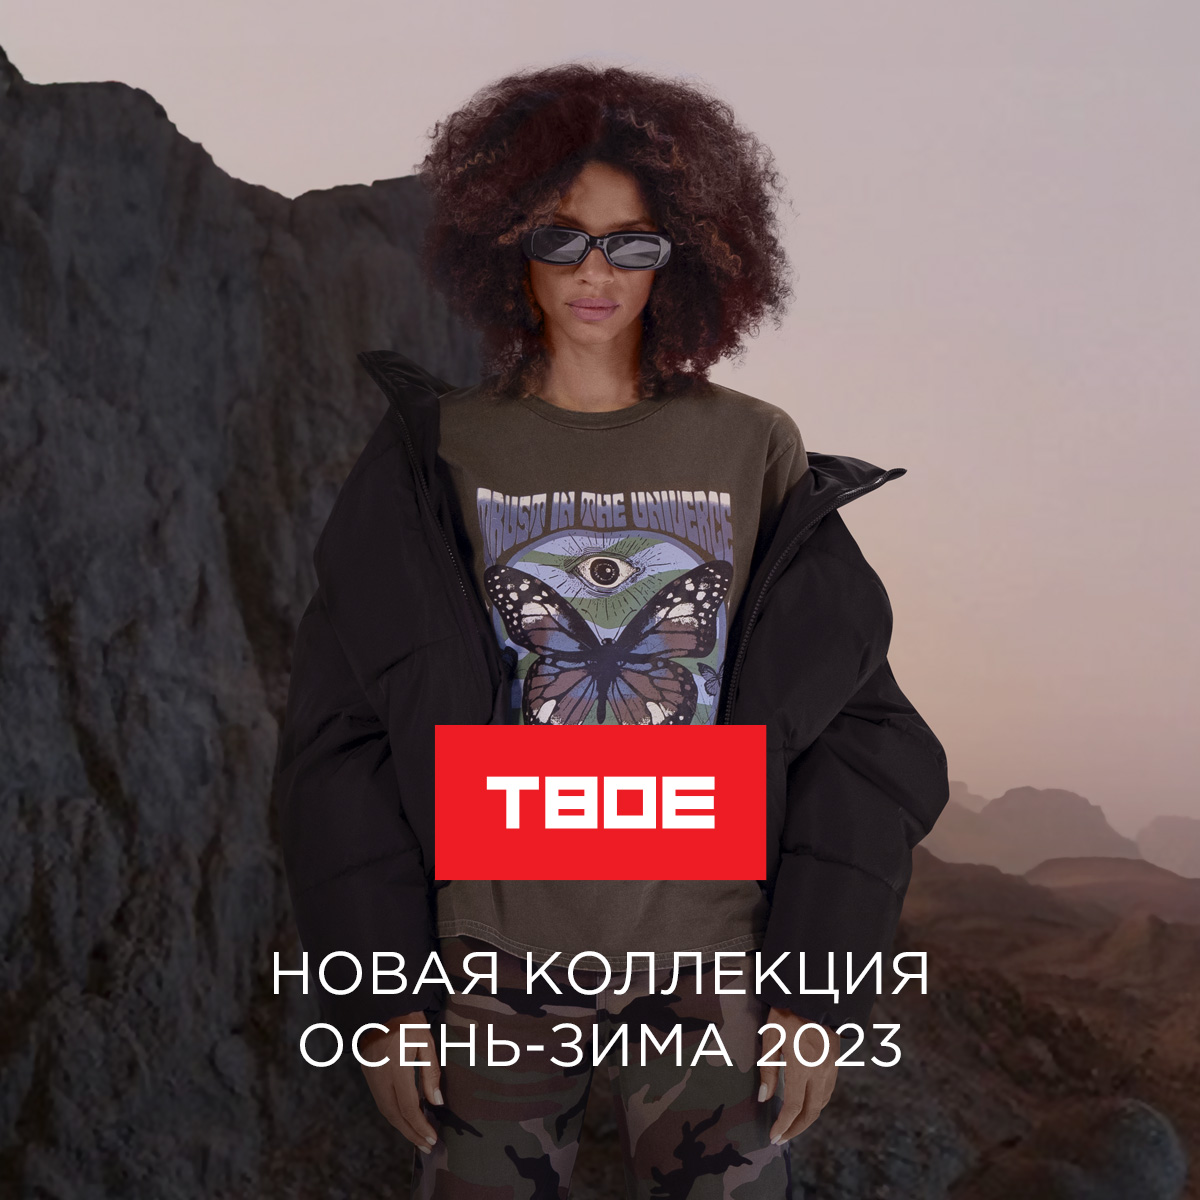 Встречай новую коллекцию осень-зима 2023 в ТВОЕ! 